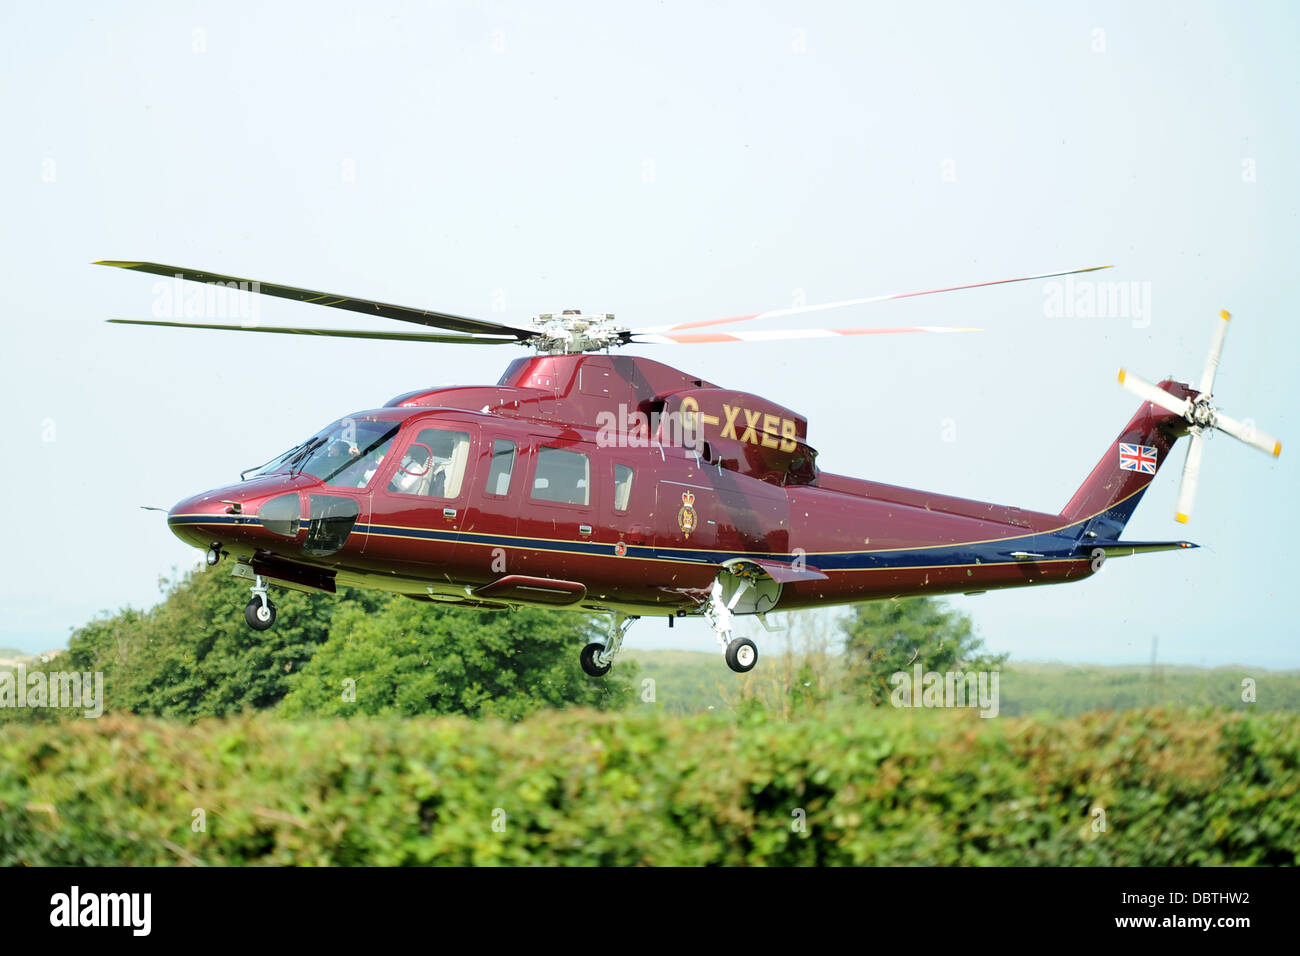 Der königlichen Familie Hubschrauber auch bekannt als die Königin Helikopter Flug (TQHF) Sikorsky G-XXEA Stockfoto